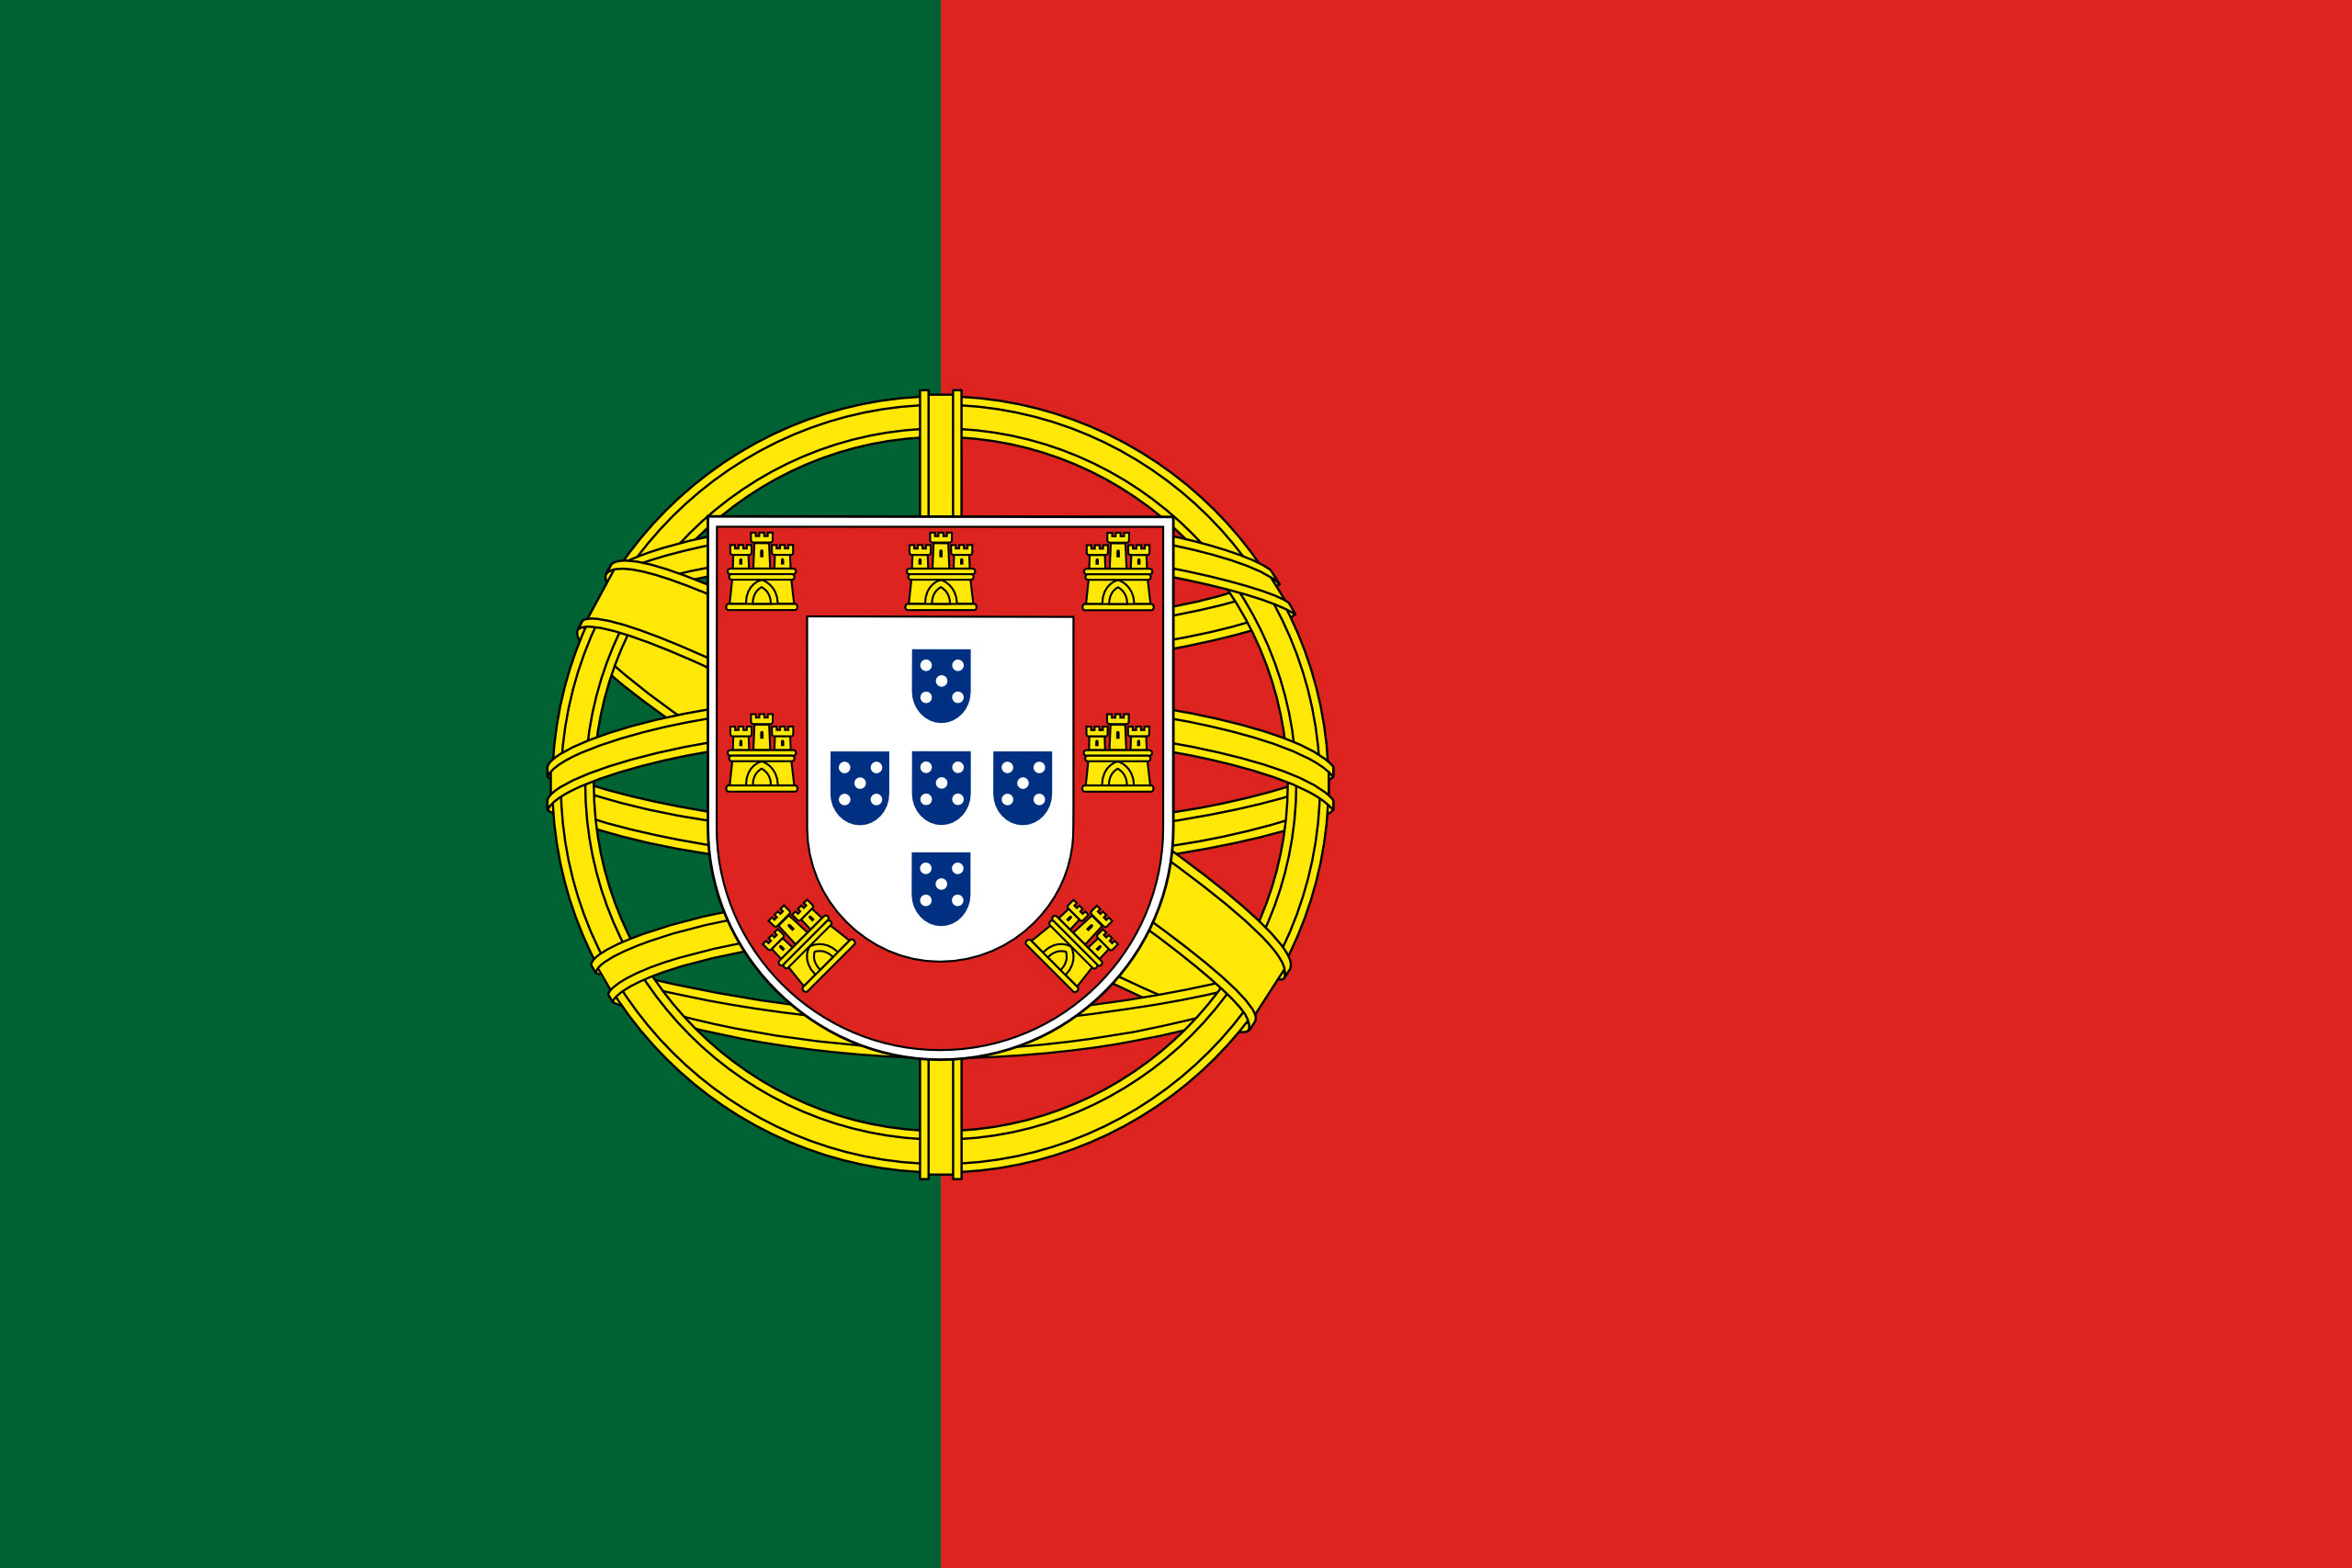 دانلود عکس پرچم کشور پرتغال